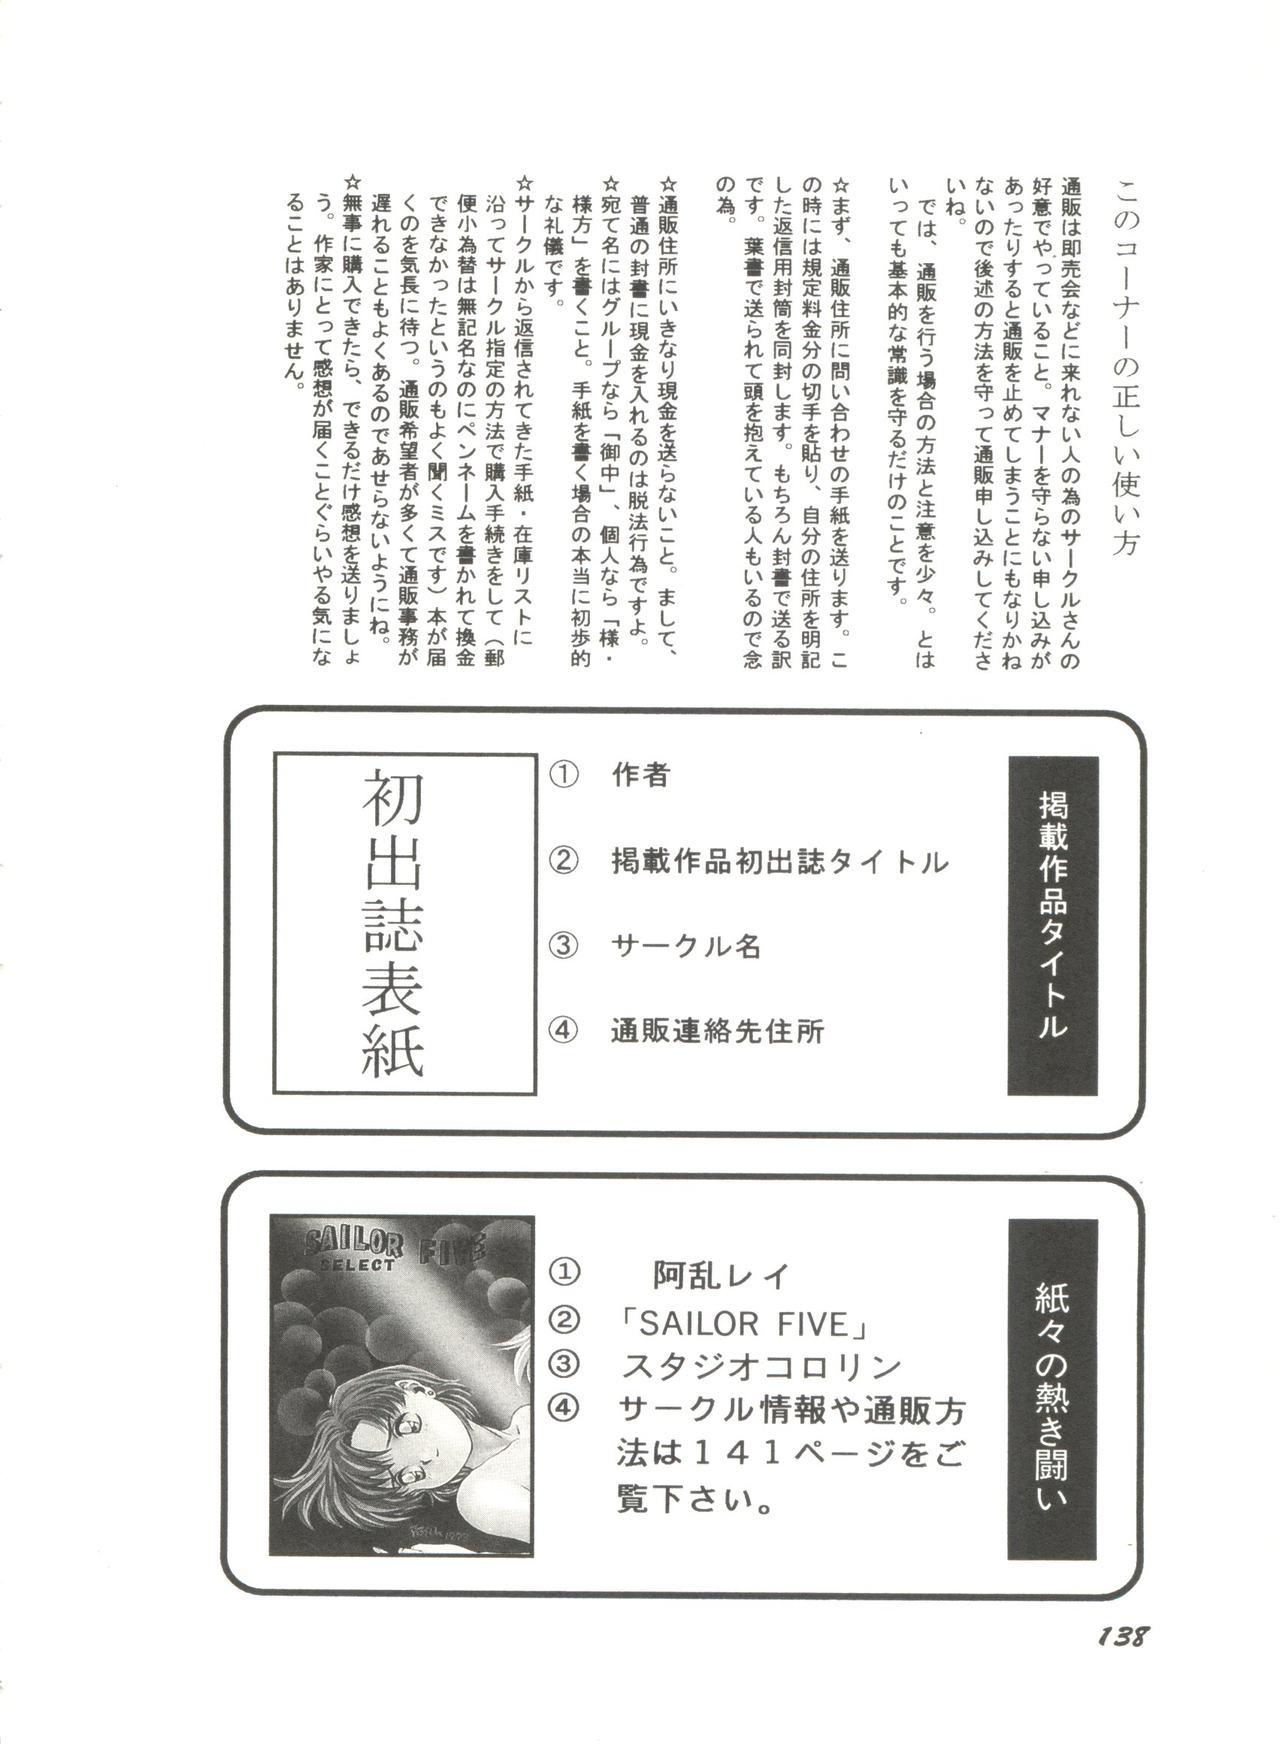 Bishoujo Doujinshi Anthology 2 - Moon Paradise 1 Tsuki no Rakuen 140